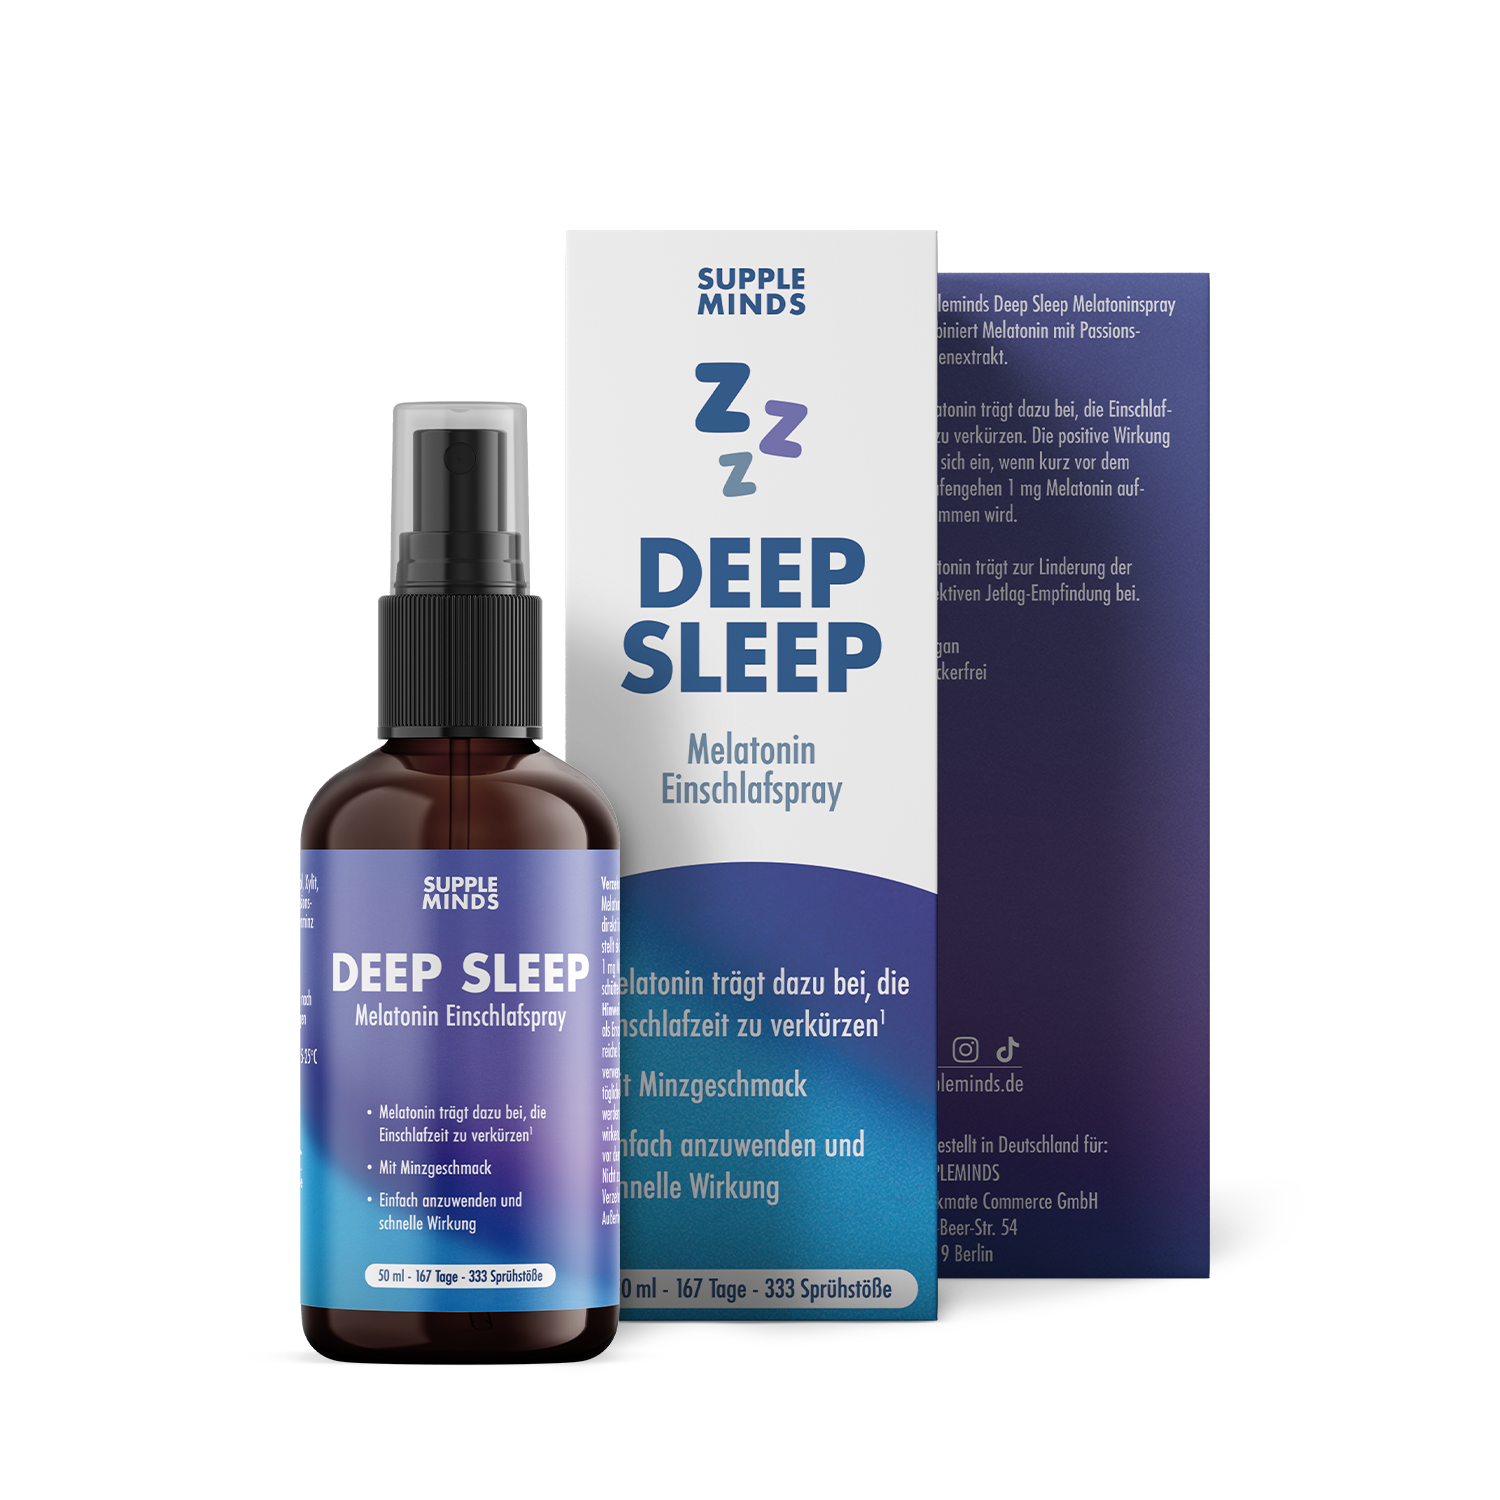 Deep Sleep Spray